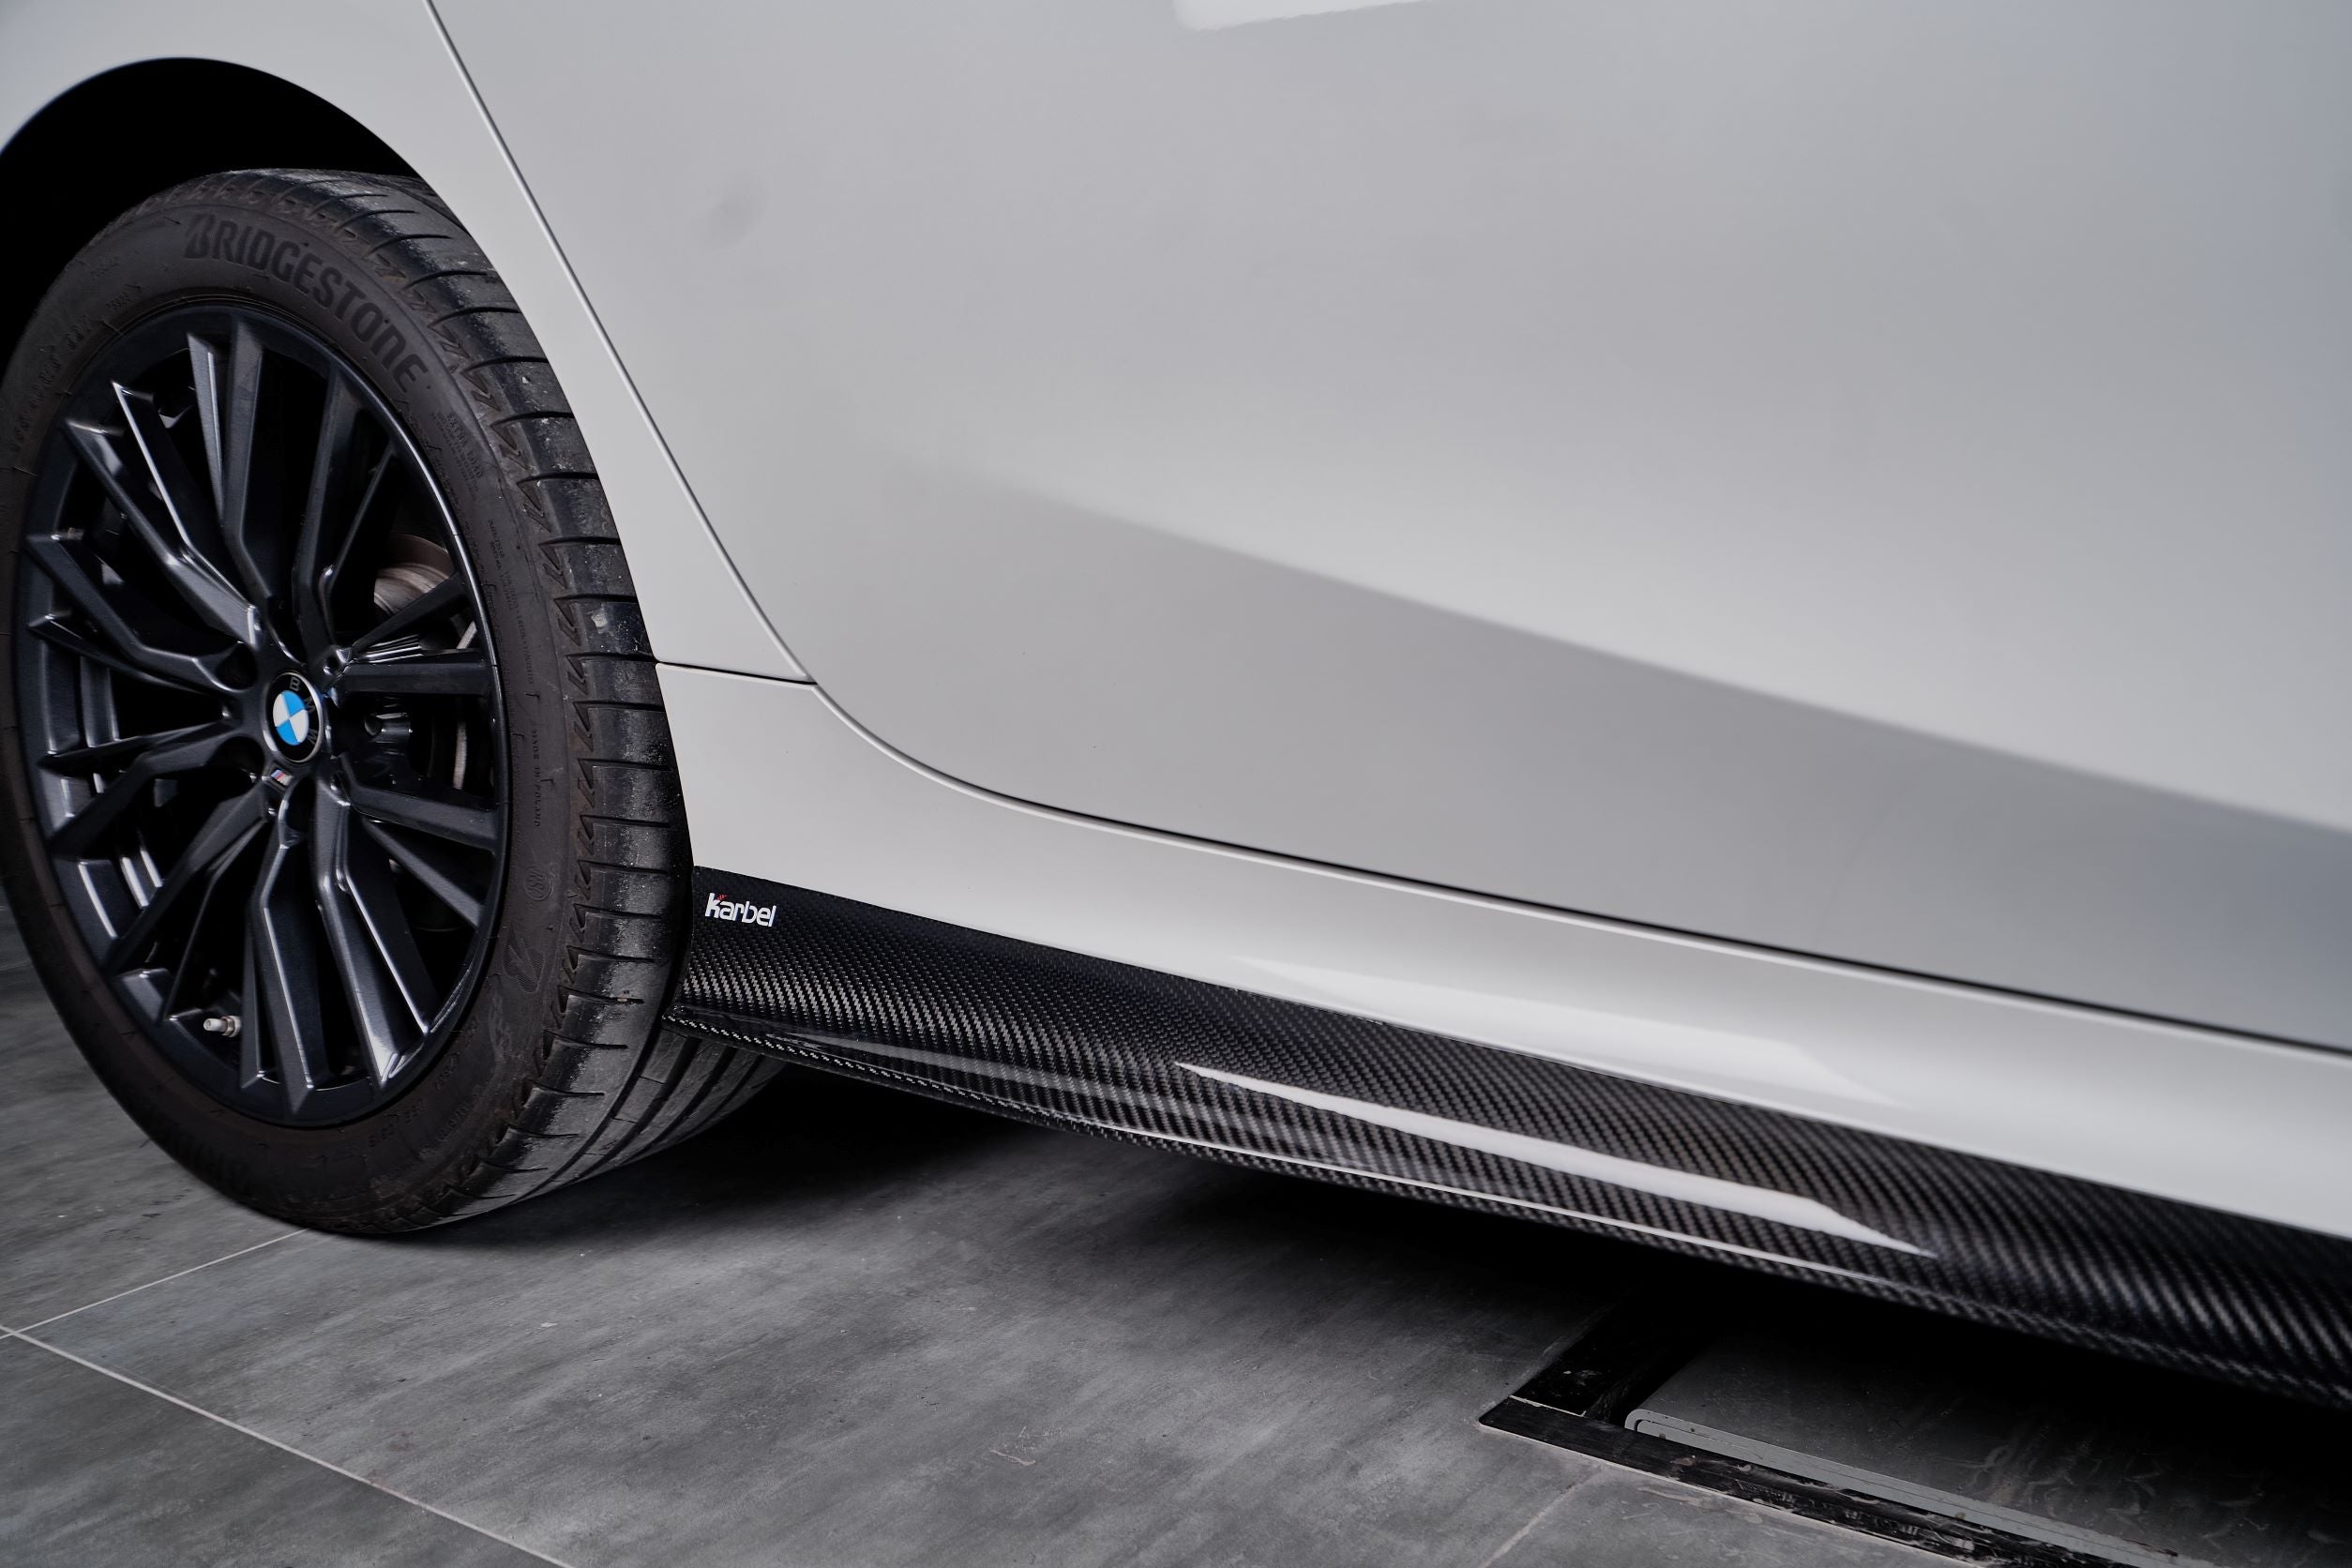 Karbel Carbon Dry Carbon Fiber Side Skirts for BMW 3 Series G20 2019-ON